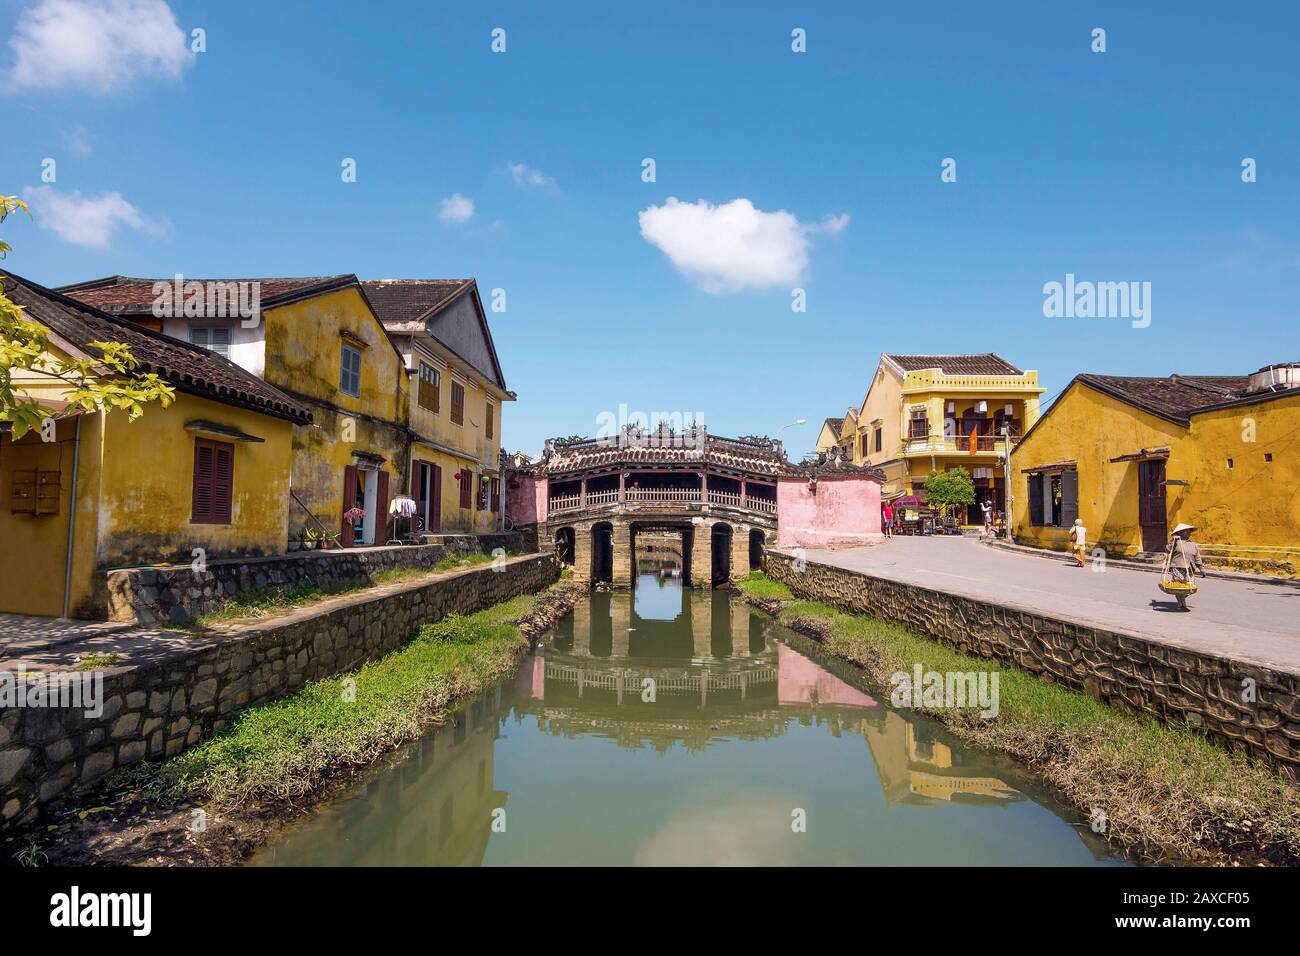 Japanese Covered Bridge in der Alten Stadt Hoi An, Vietnam. Stockfoto